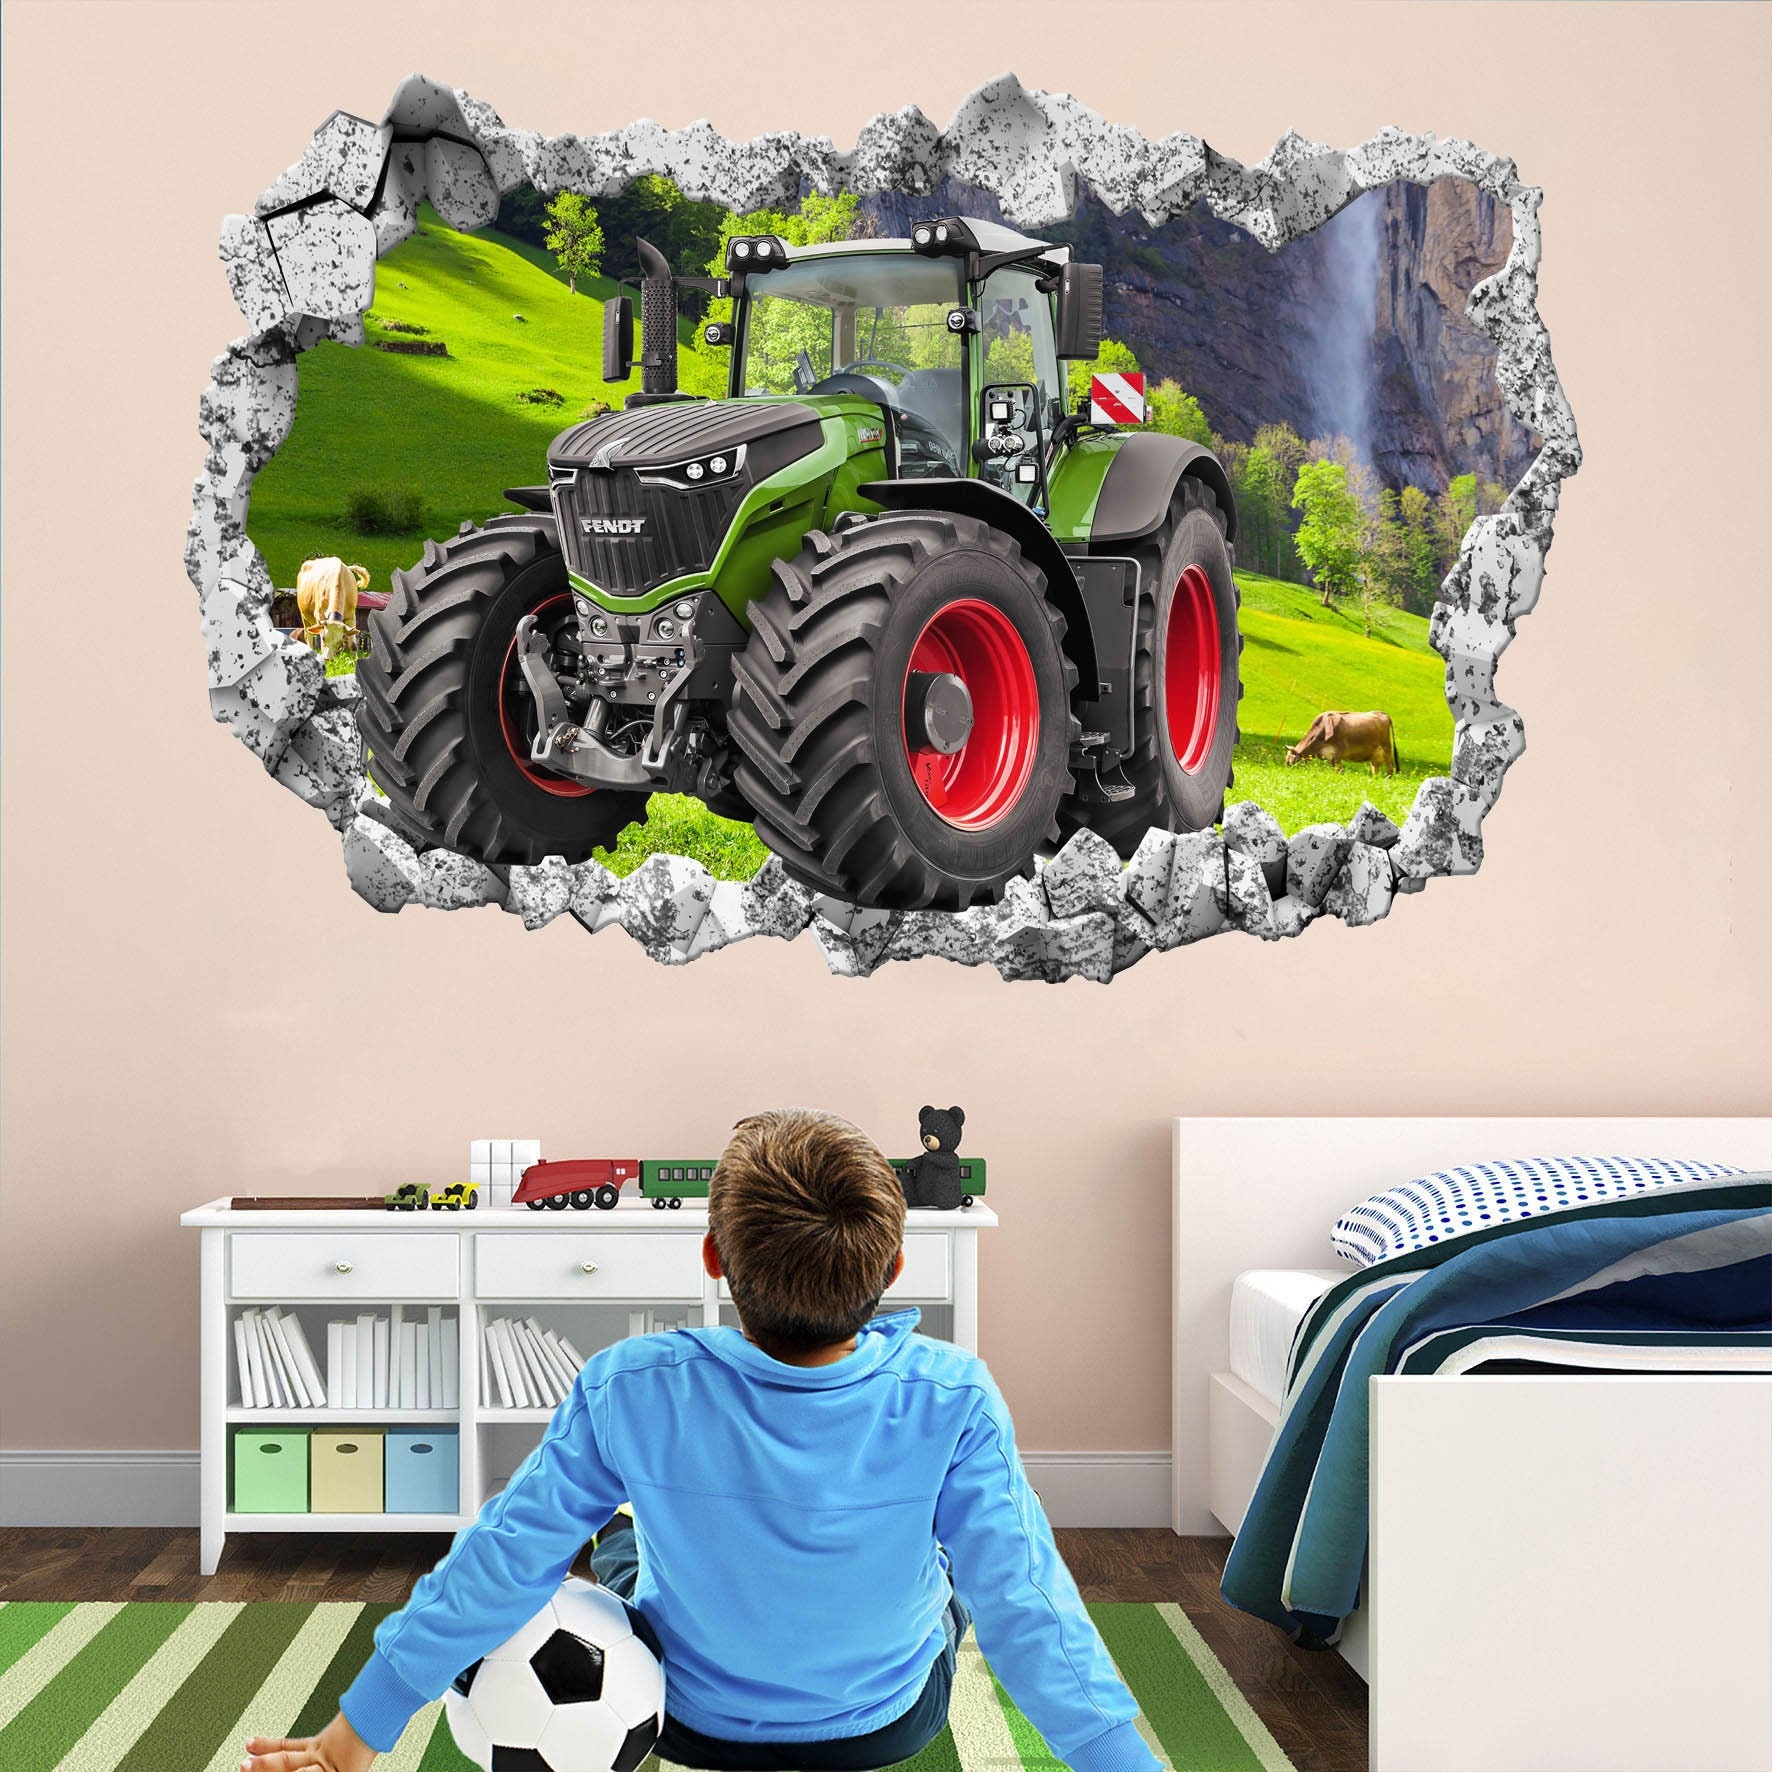 Traktor mit anhänger, heu in einer rolle auf weißem hintergrund. erntezeit.  handgezeichnete vektorillustration für druck, grußkarten, poster, aufkleber,  textil- und saisondesign.